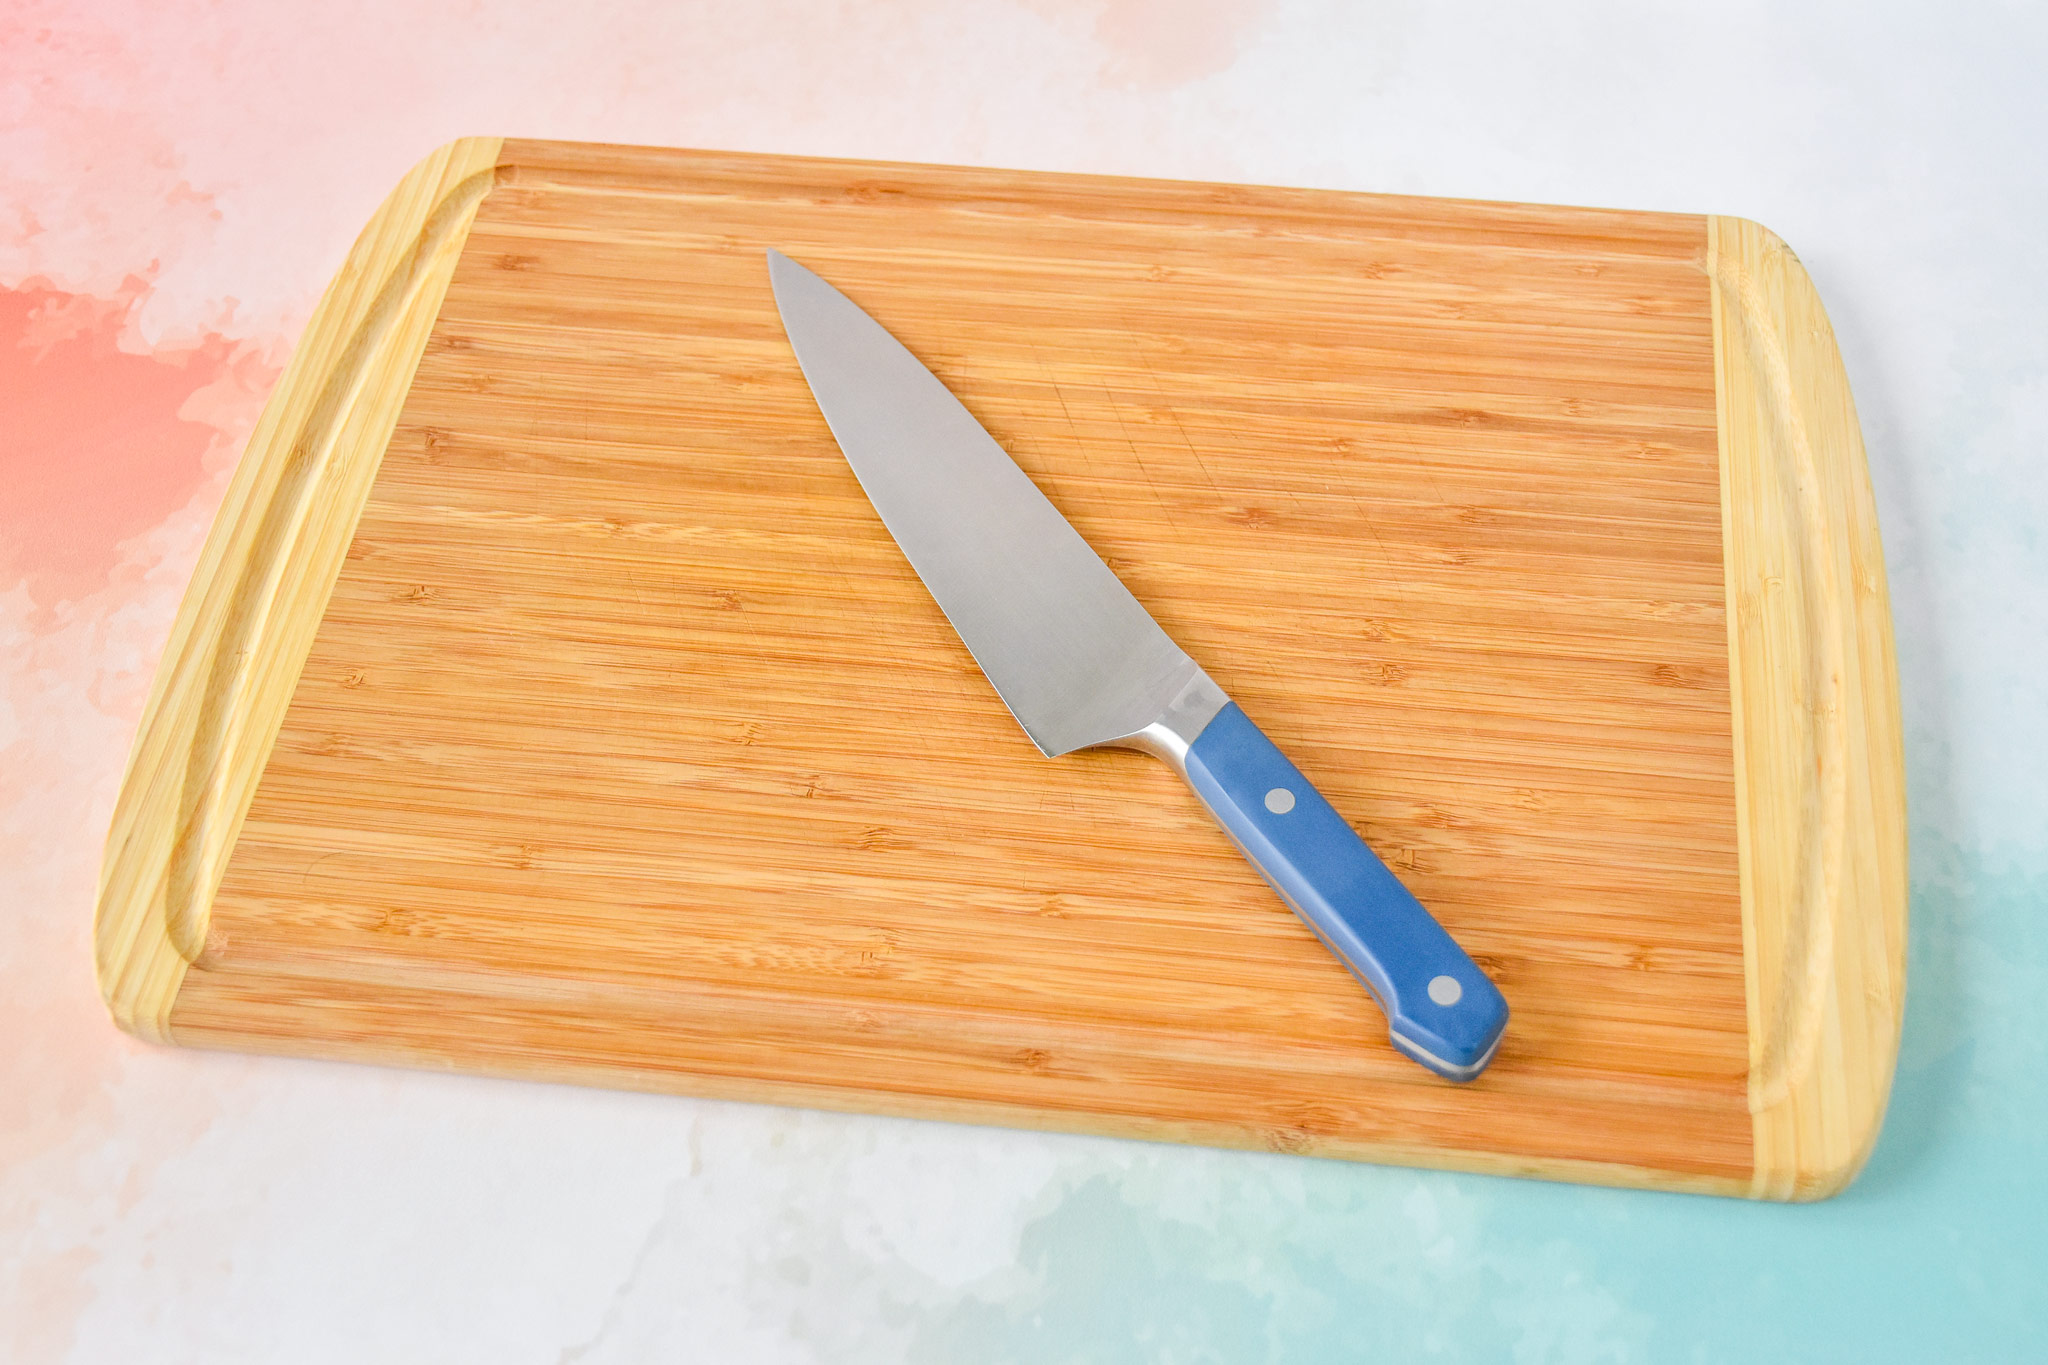 sharp knife and cutting board.